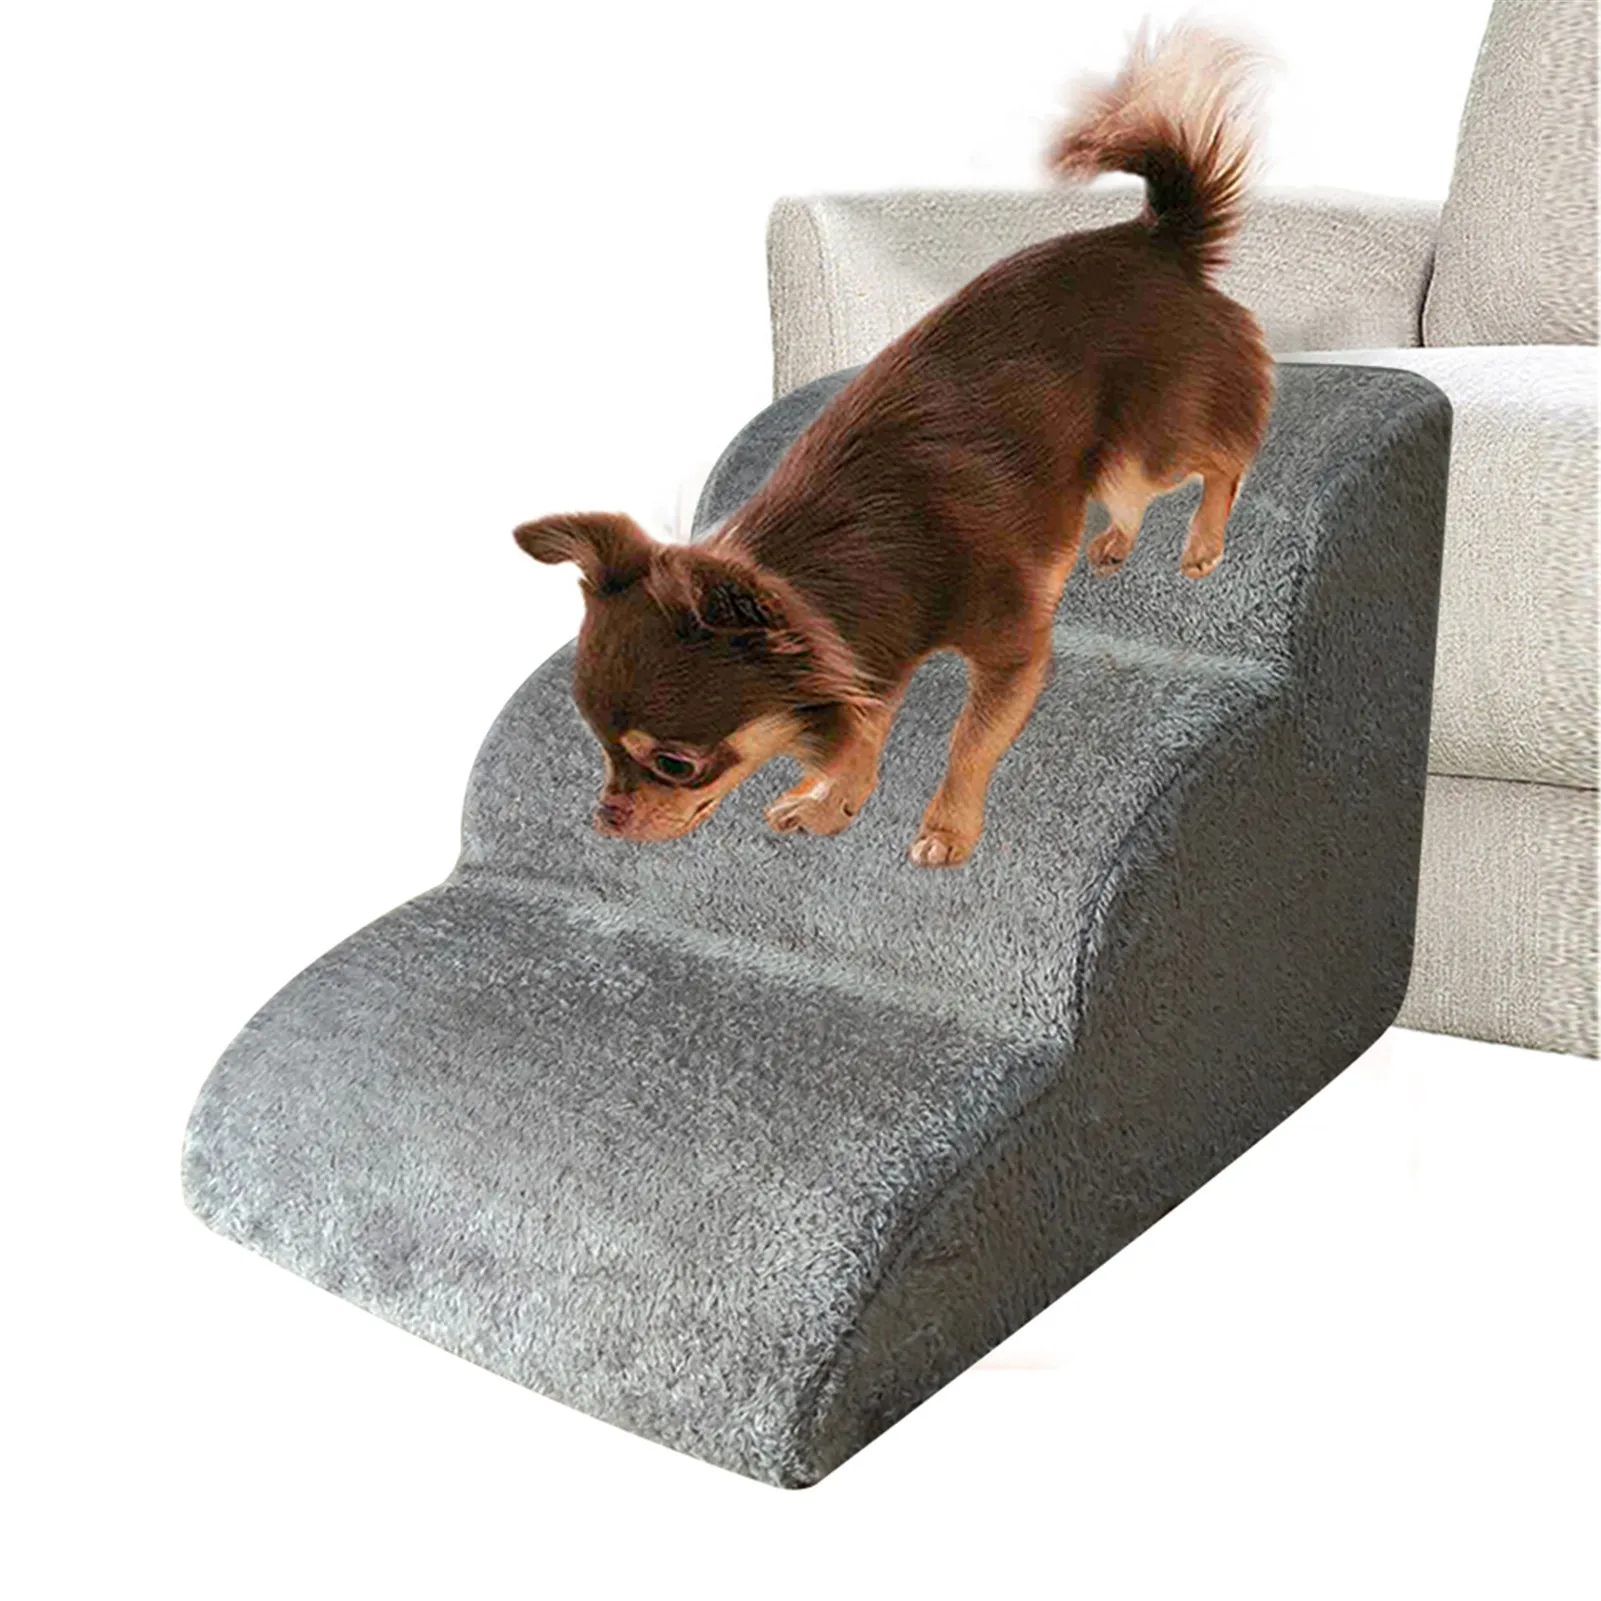 Escalera plegable para perro en la cama escalonada sofá antideslizante suave y seguro escalera de perro de 3 pasos casa